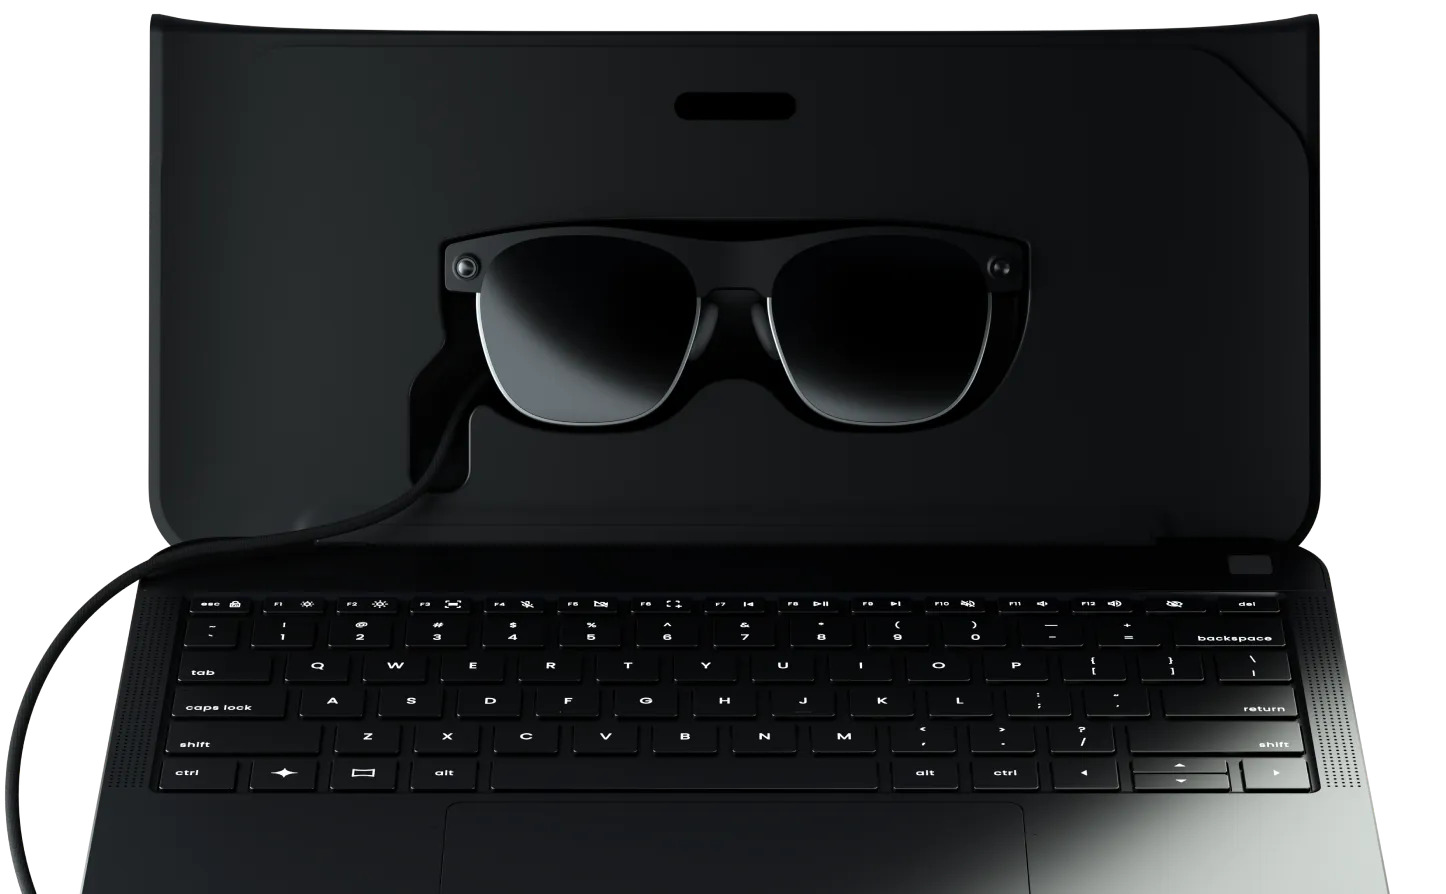 Spacetop випустила ноутбук G1 з окулярами доповненої реальності замість дисплея, вартістю 1900 доларів (відео)